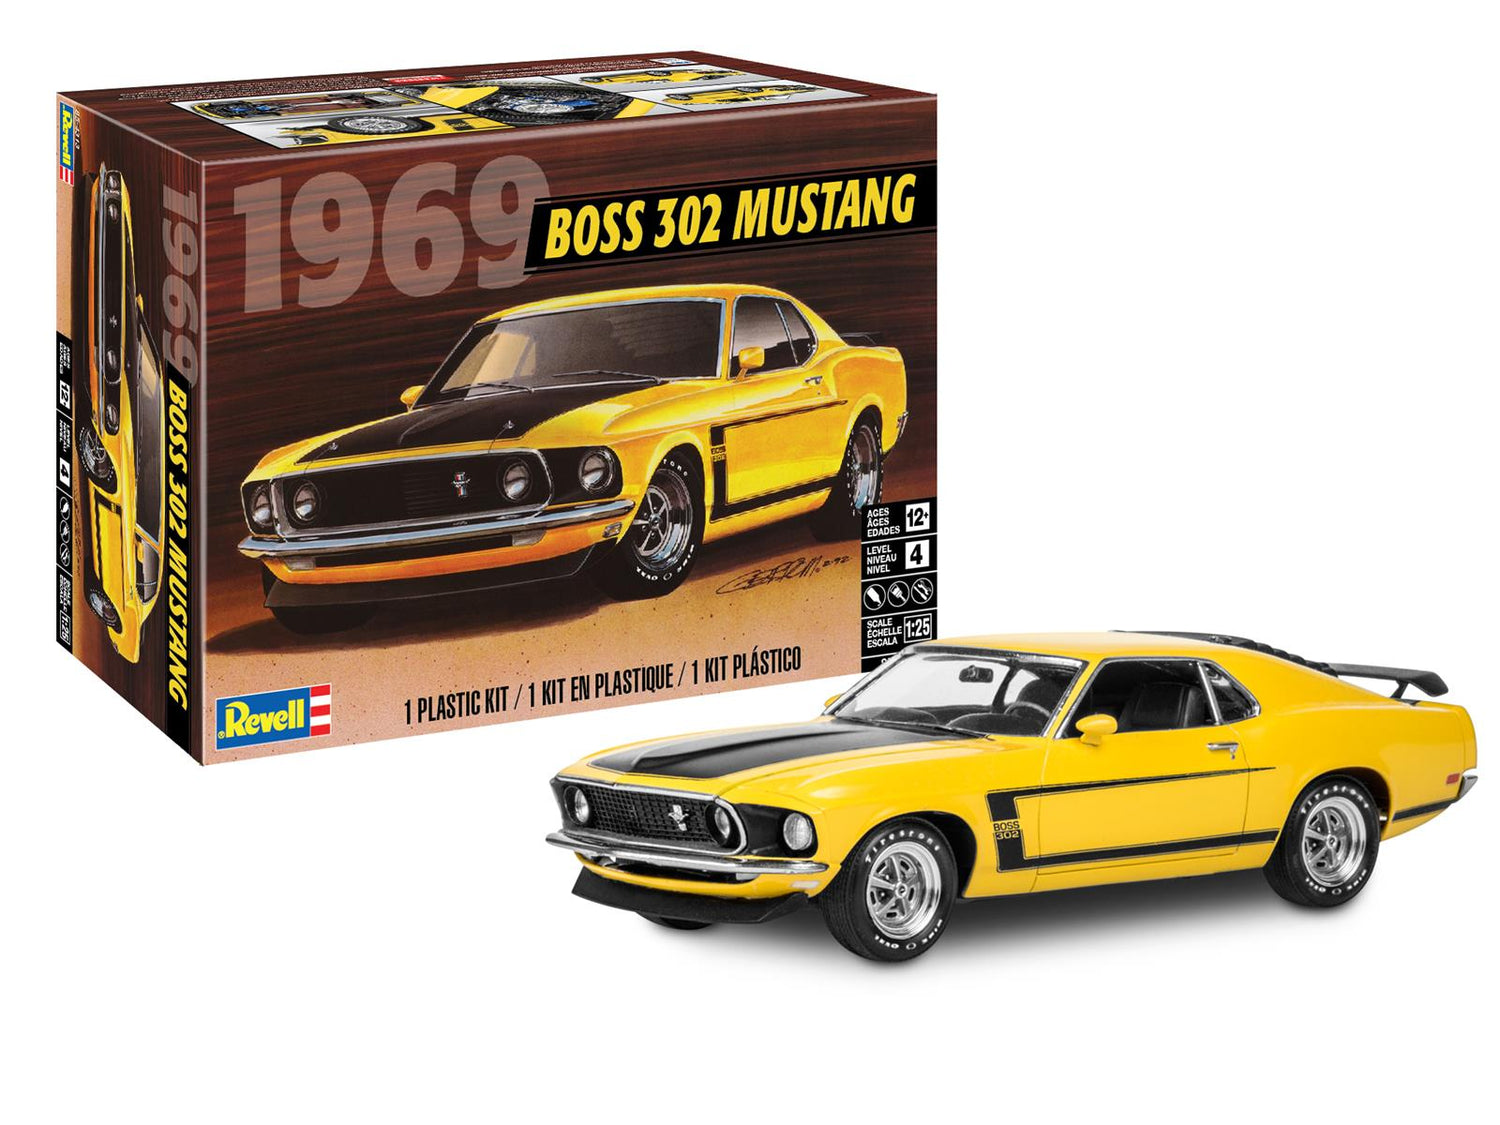 Revell 1969 Boss 302 Mustang 1:25 Scale Model Kit